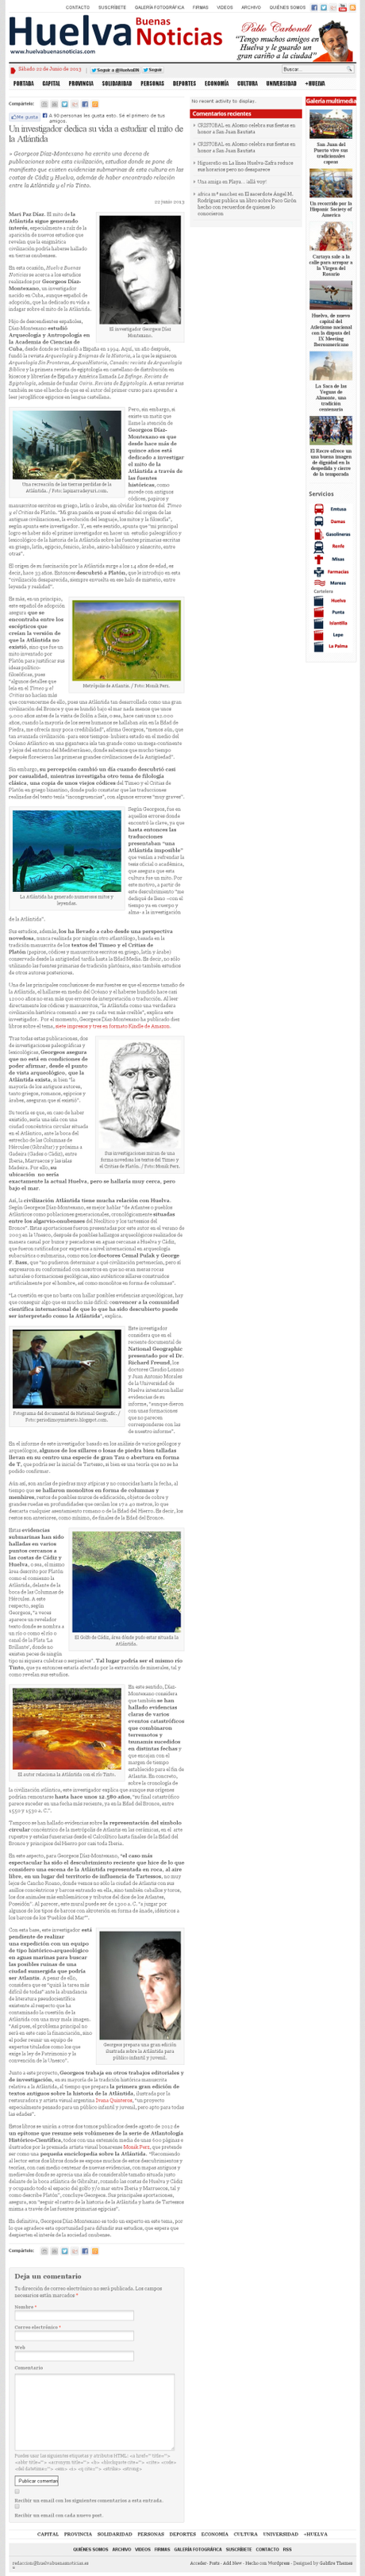 http://huelvabuenasnoticias.com/2013/06/22/un-investigador-dedica-su-vida-a-estudiar-el-mito-de-la-atlantida/